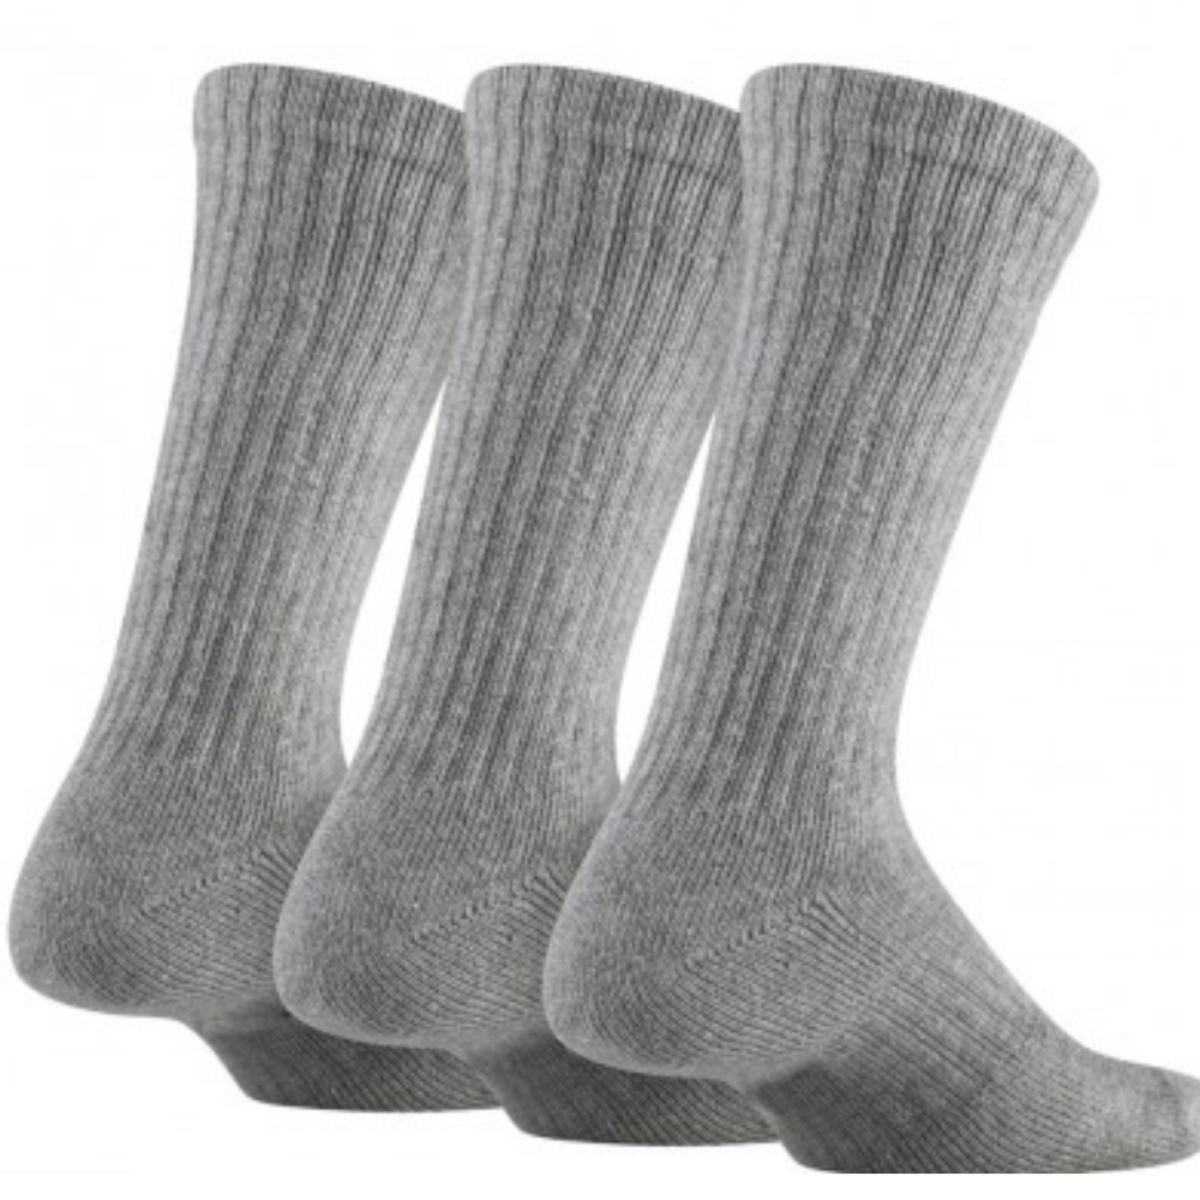 calcetas largas deportivas algodon(1 par)